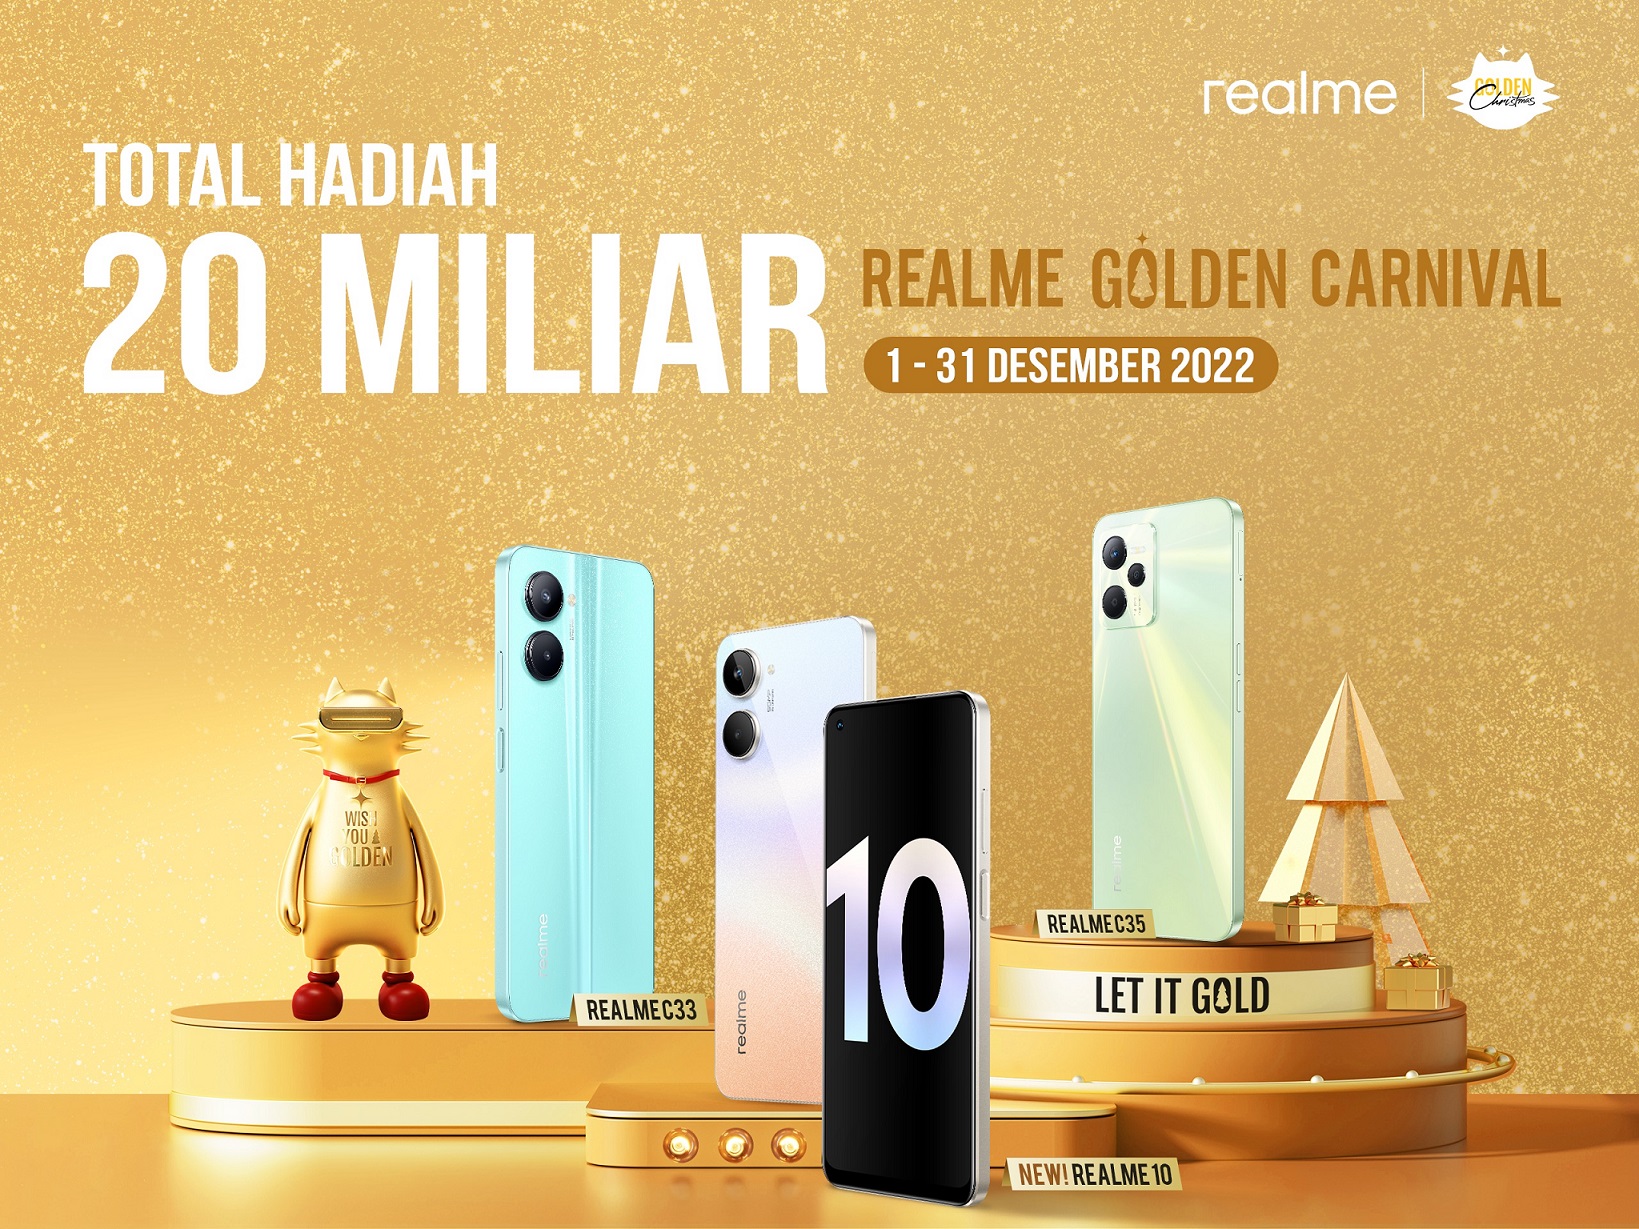 realme Golden Carnival Total Hadiah 2 Miliar Rupiah